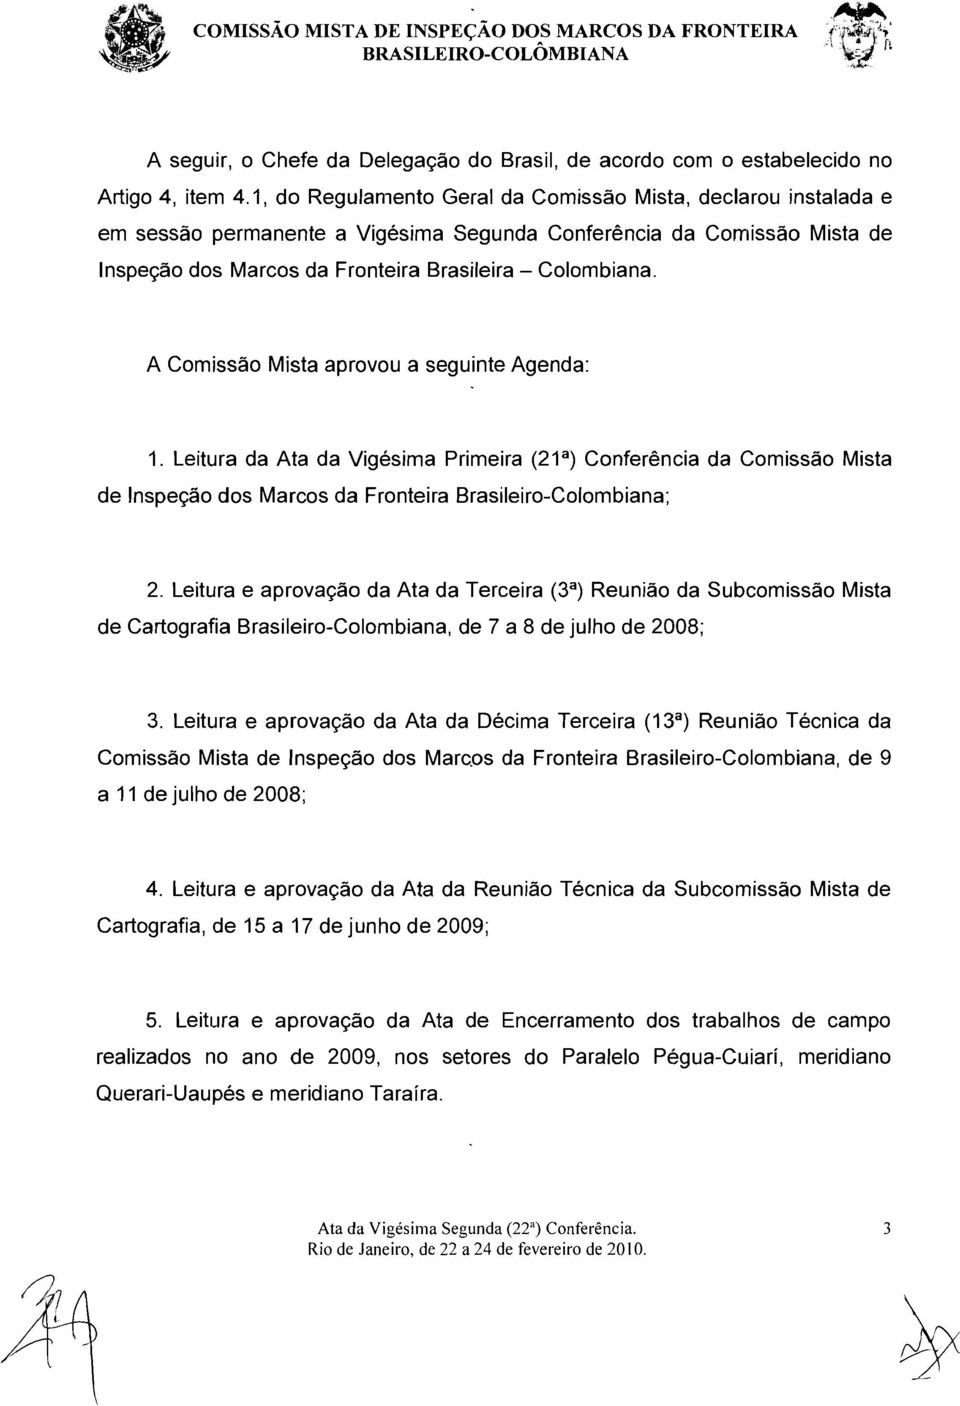 A Comissao Mista aprovou a seguinte Agenda: 1. Leitura da Ata da Vigesima Primeira (21 a ) Conferencia da Comissao Mista de lnspecao dos Marcos da Fronteira Brasileiro-Colombiana; 2.